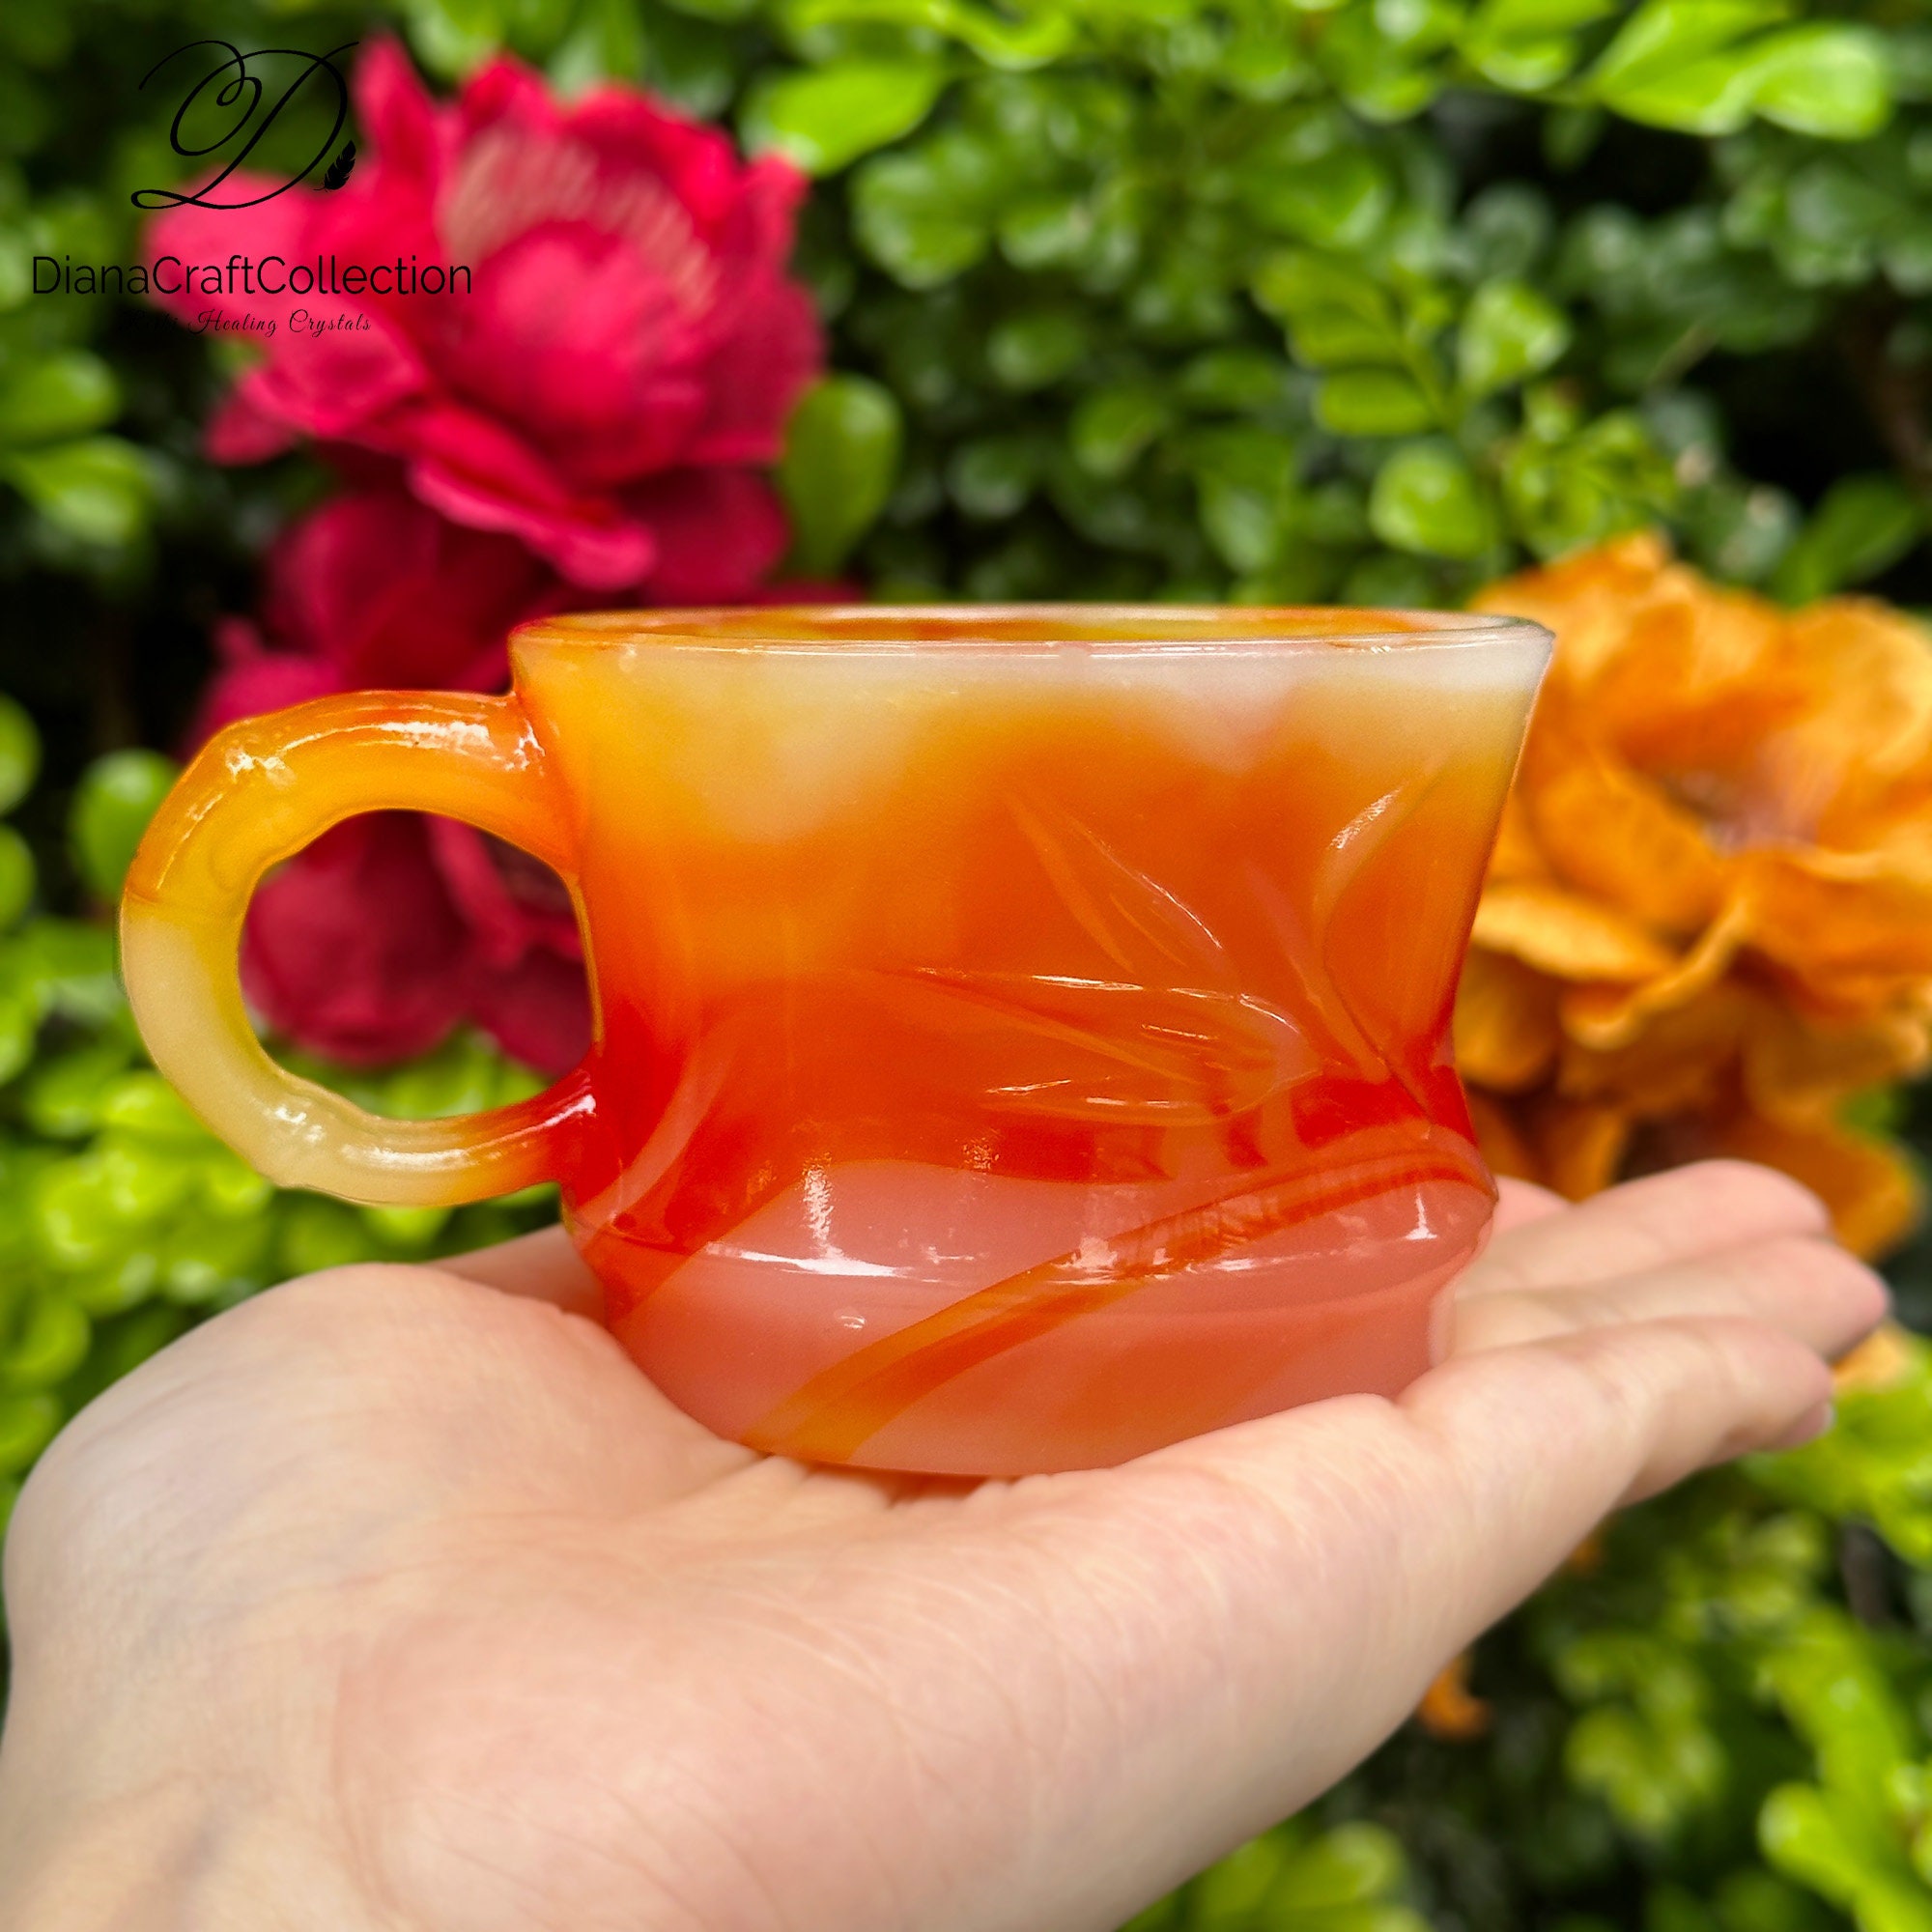 Vintage Crystal Tea Cup Set – Rose Hill Boutique